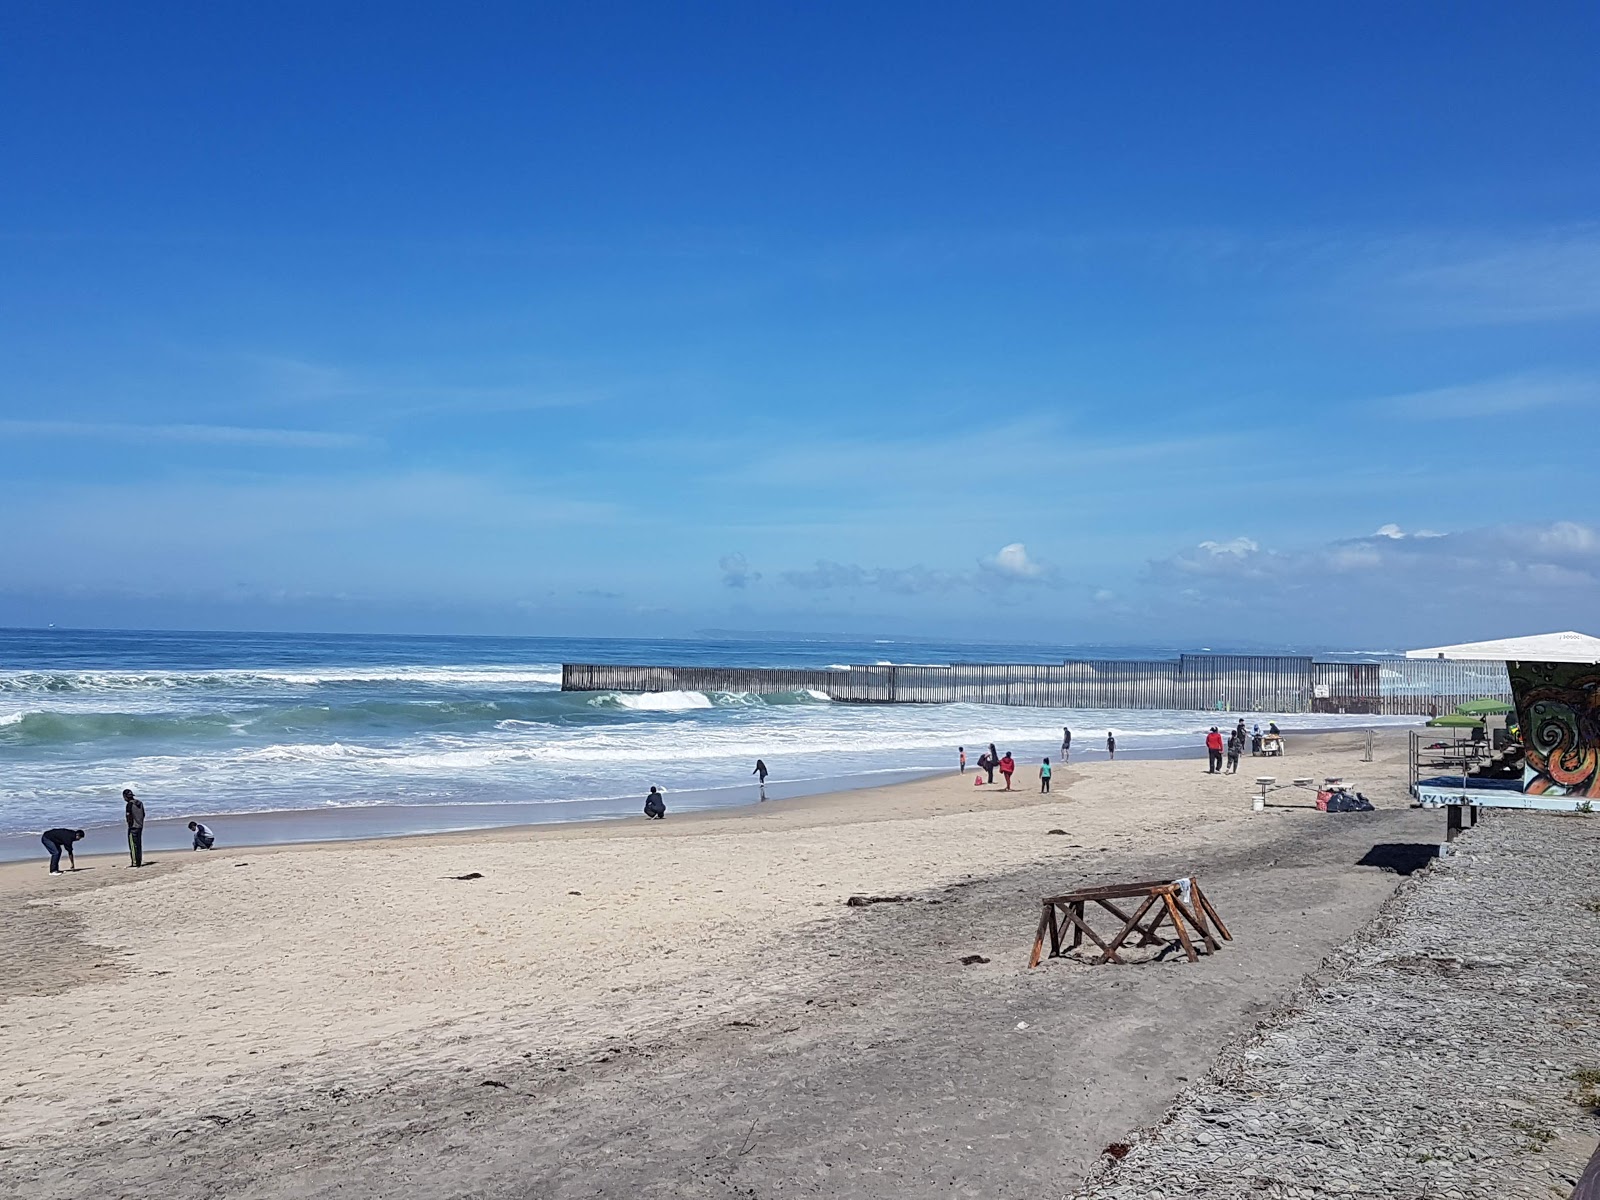 Fotografie cu Playa de Tijuana cu o suprafață de nisip maro